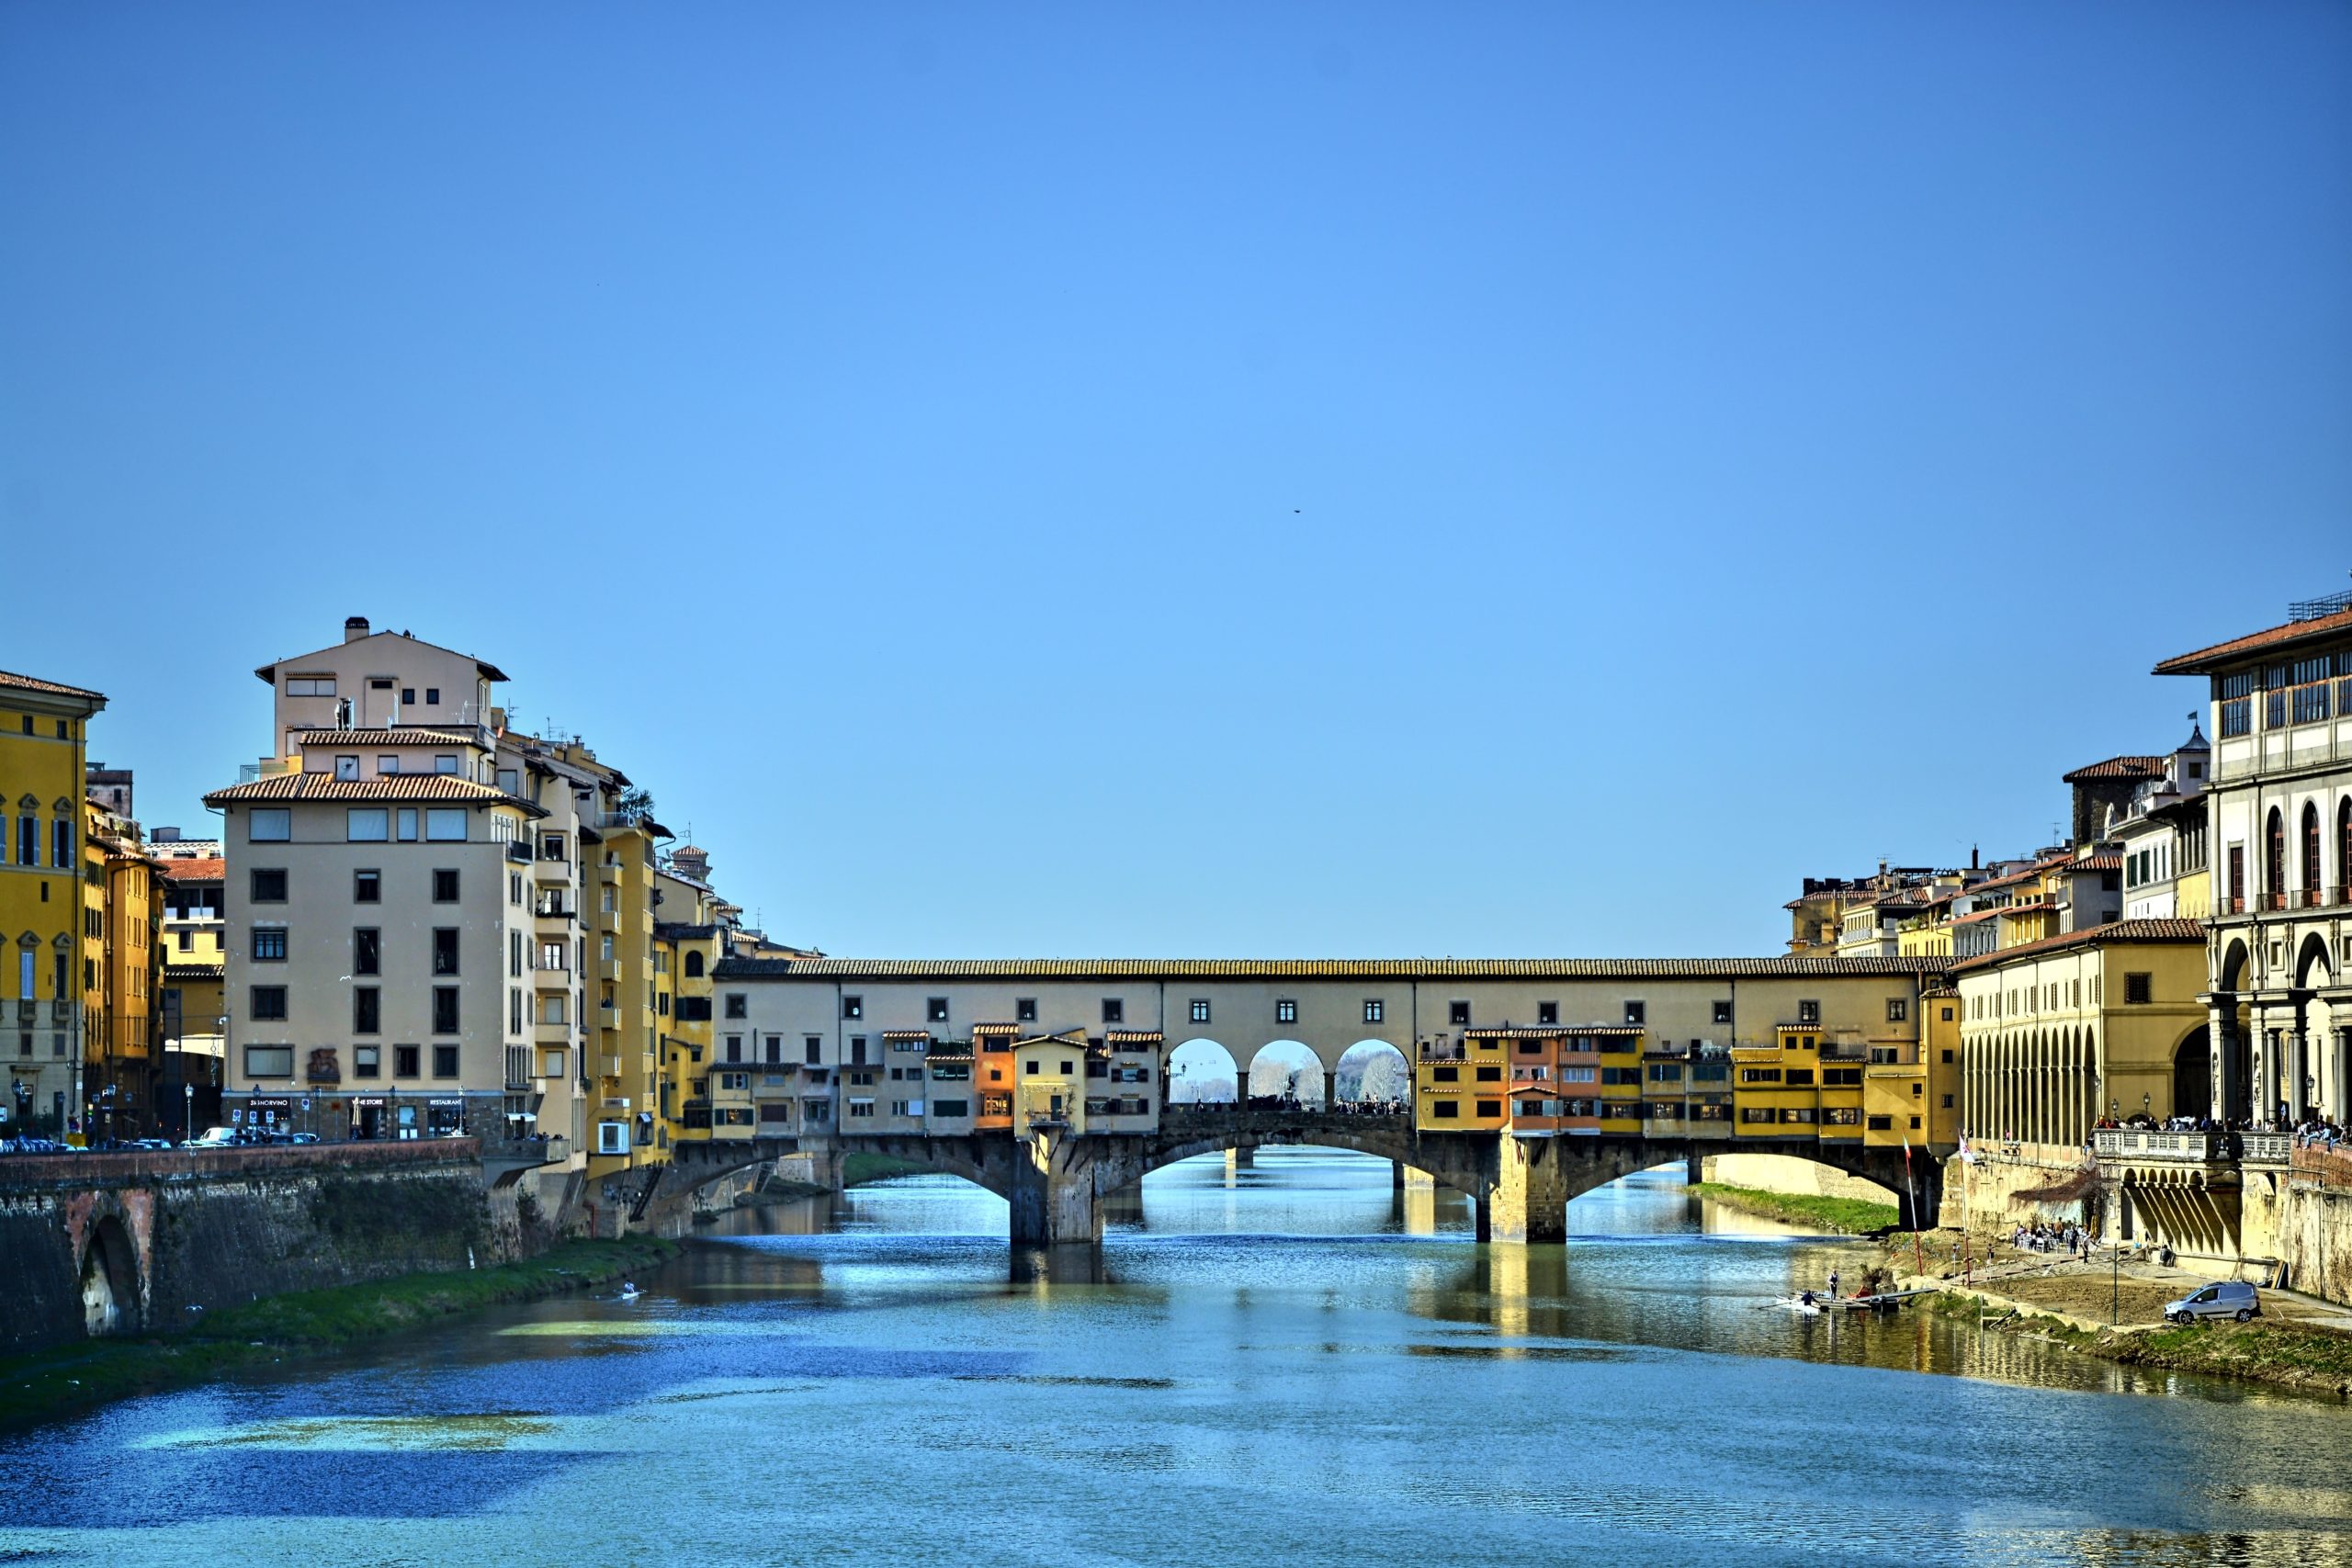 Il Ponte vecchio di Firenze